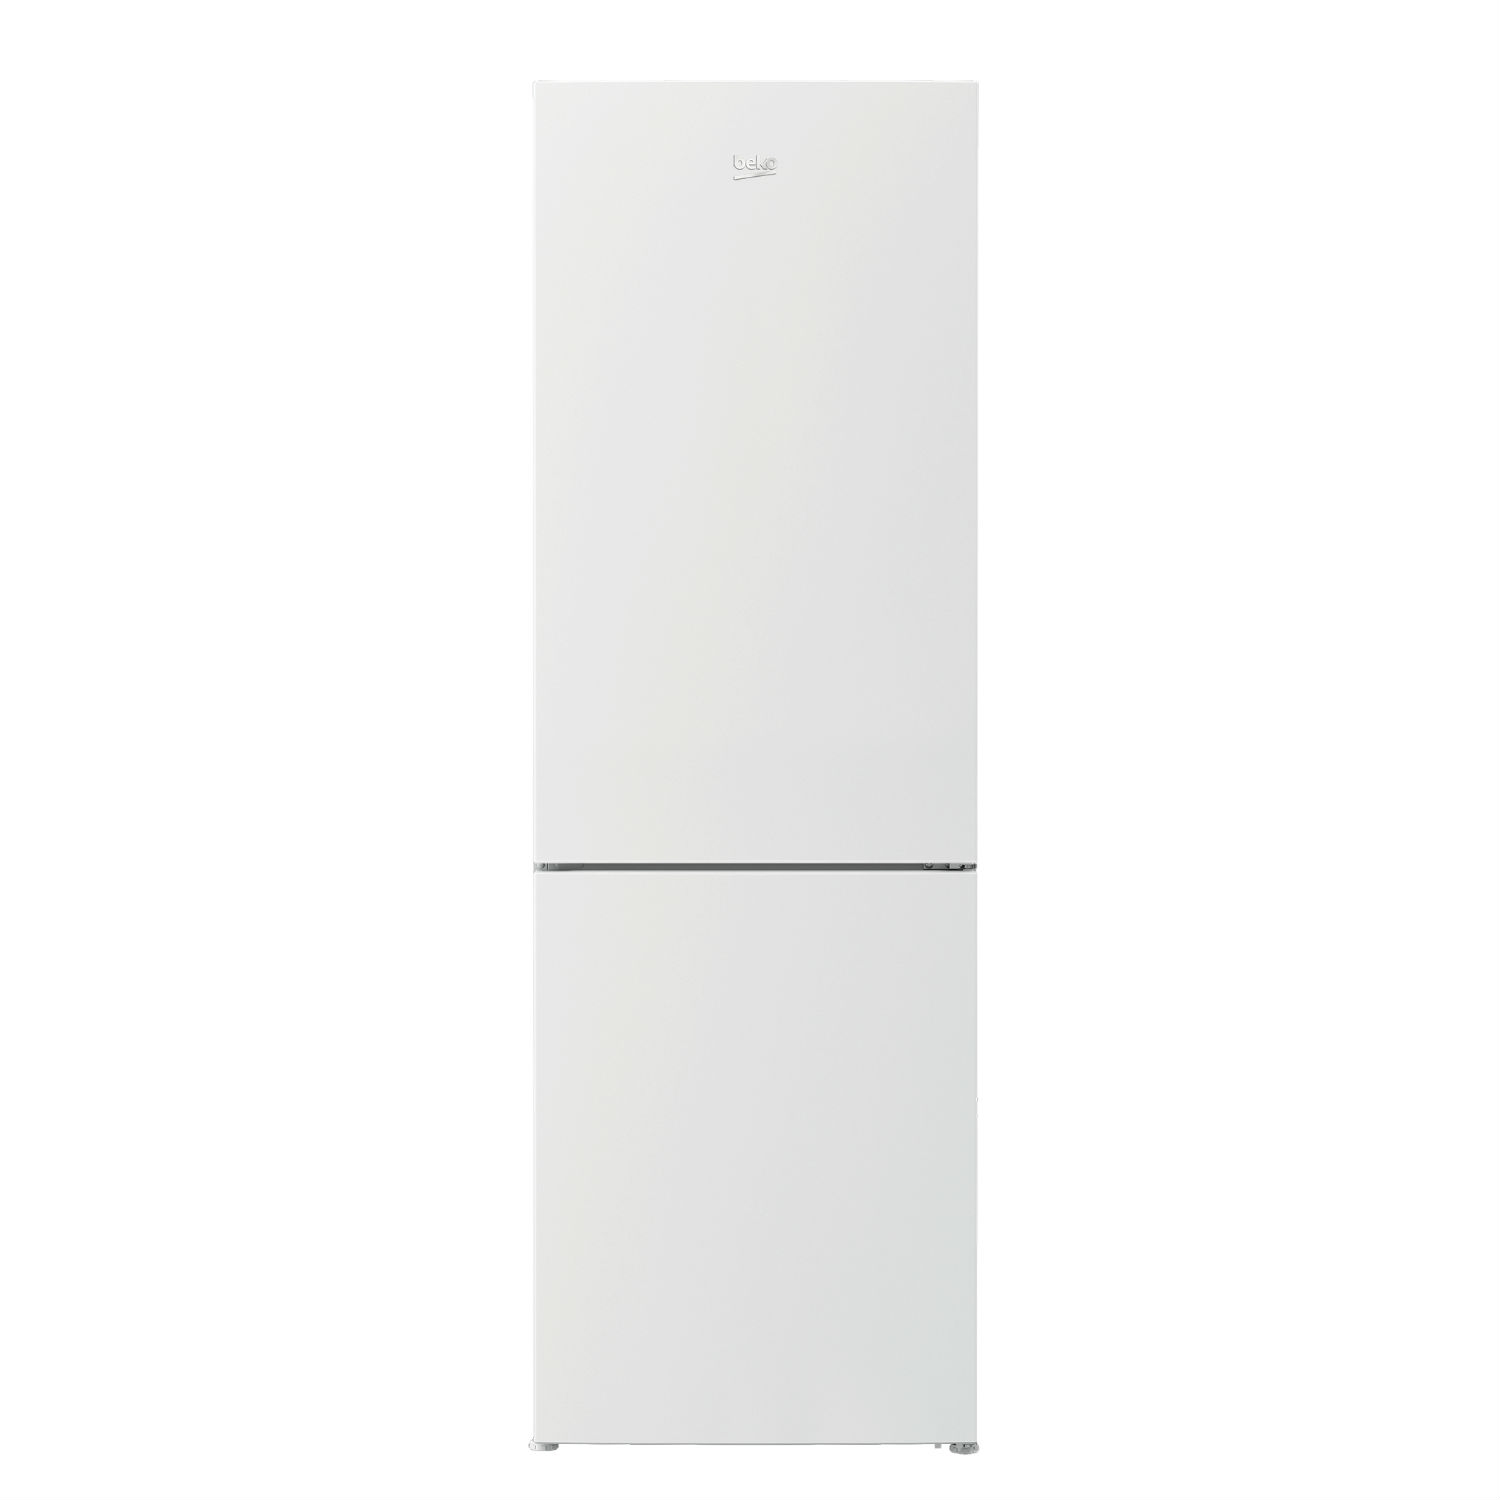 Beko CCFH1685W 60cm Fridge Freezer - White - Frost Free - 0